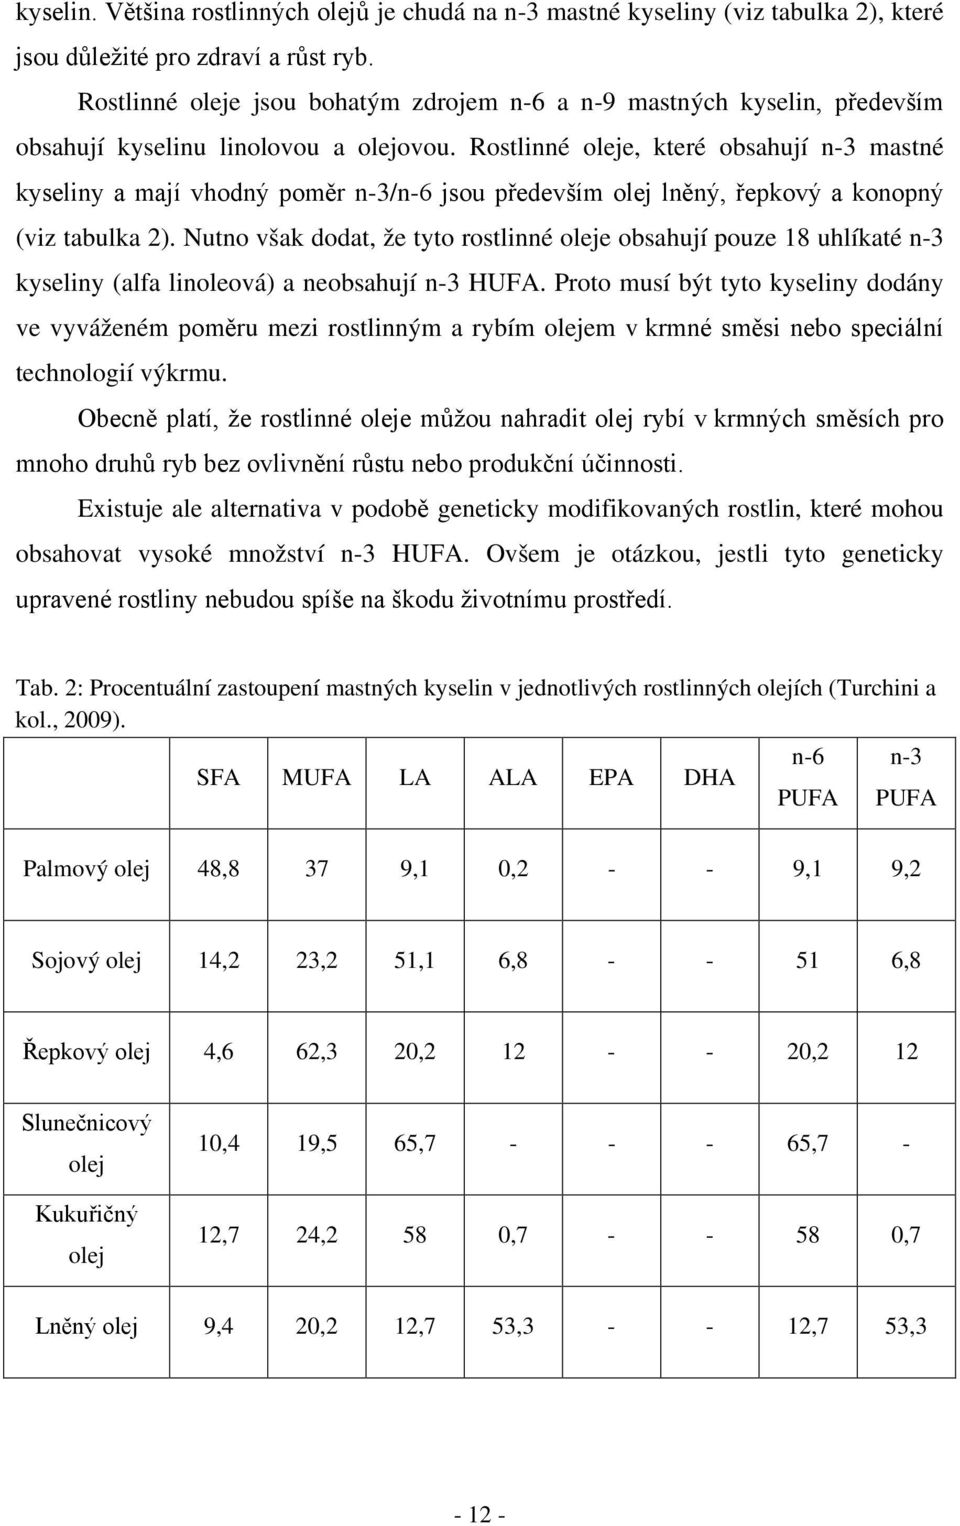 Rostlinné oleje, které obsahují n-3 mastné kyseliny a mají vhodný poměr n-3/n-6 jsou především olej lněný, řepkový a konopný (viz tabulka 2).